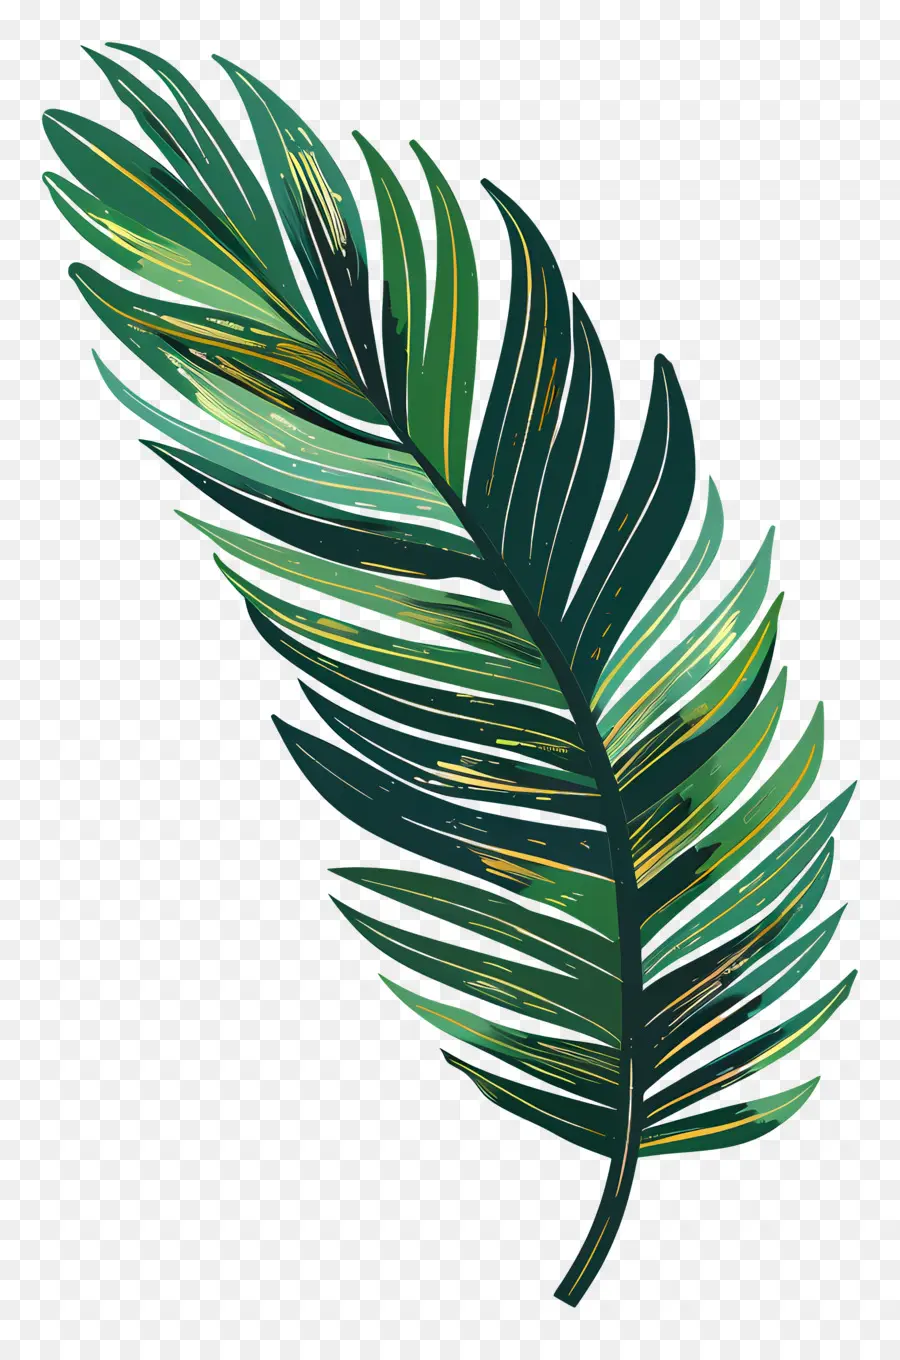 Palm leaf - Dunkelgrünes Blatt mit gelbem und orangefarbenem Glanz